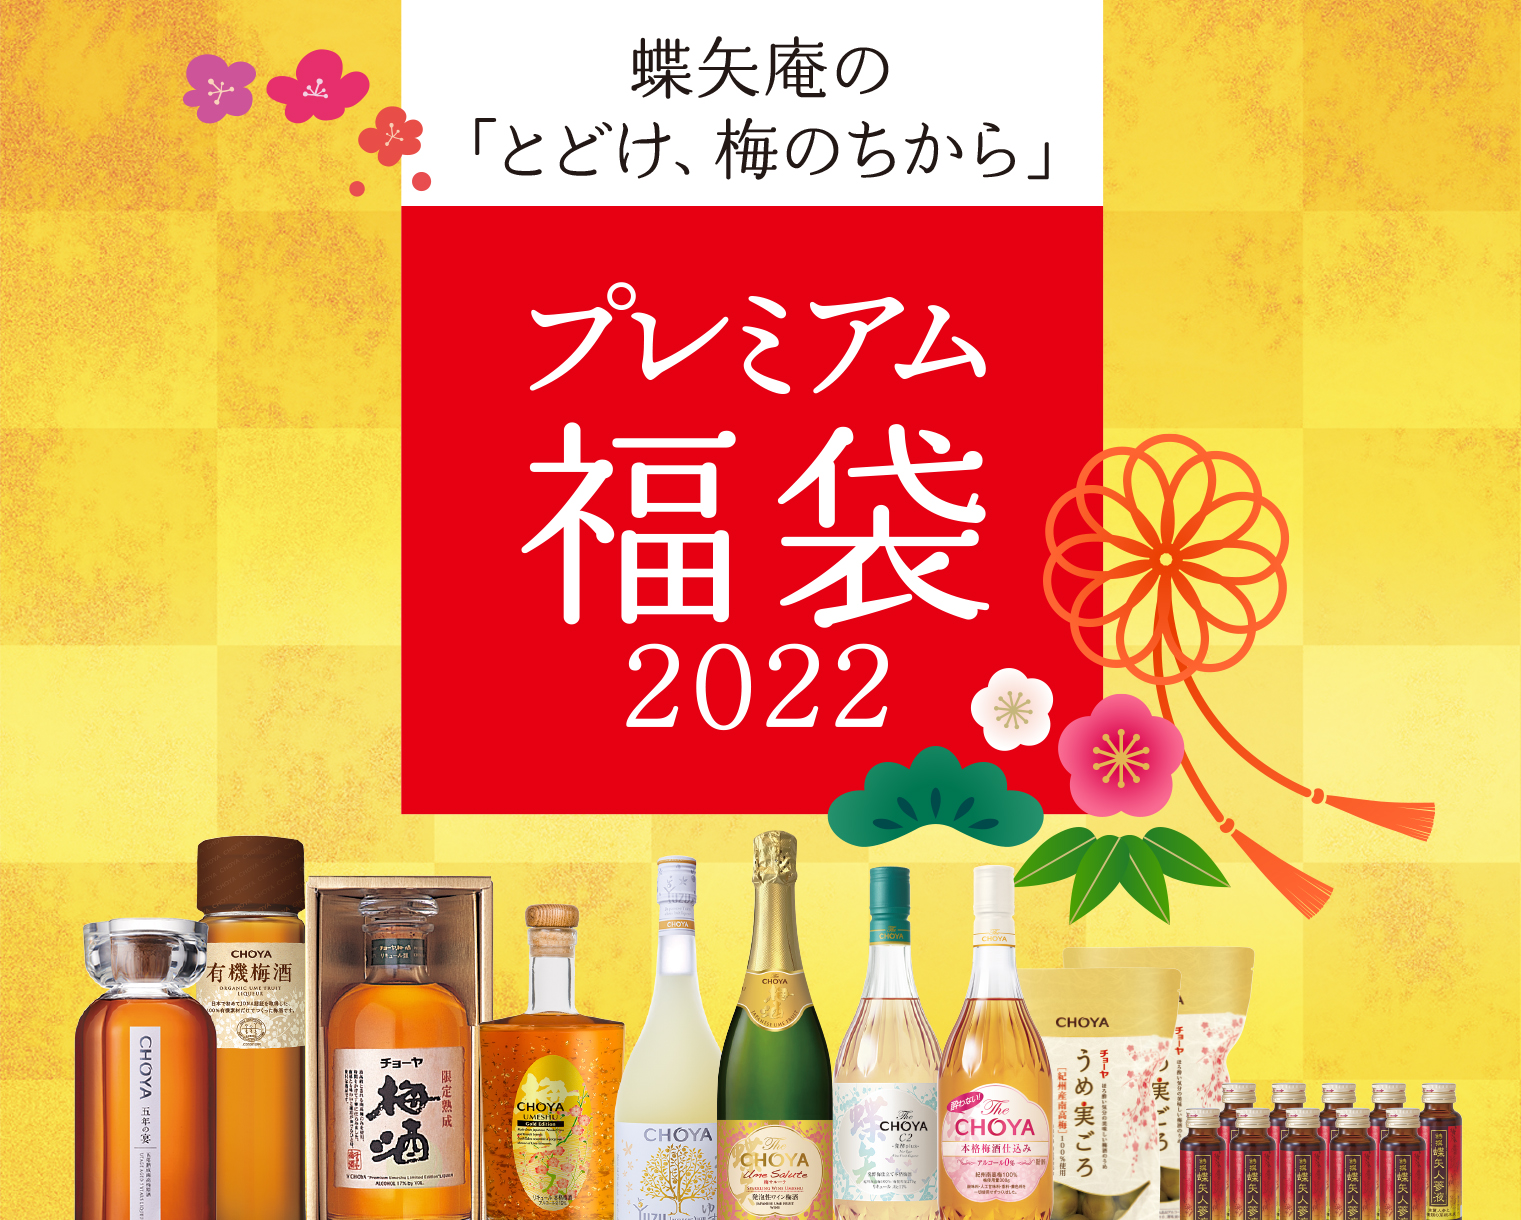 2022年福袋】チョーヤ梅酒からプレミアムな福袋が3種類が登場！ 1万円